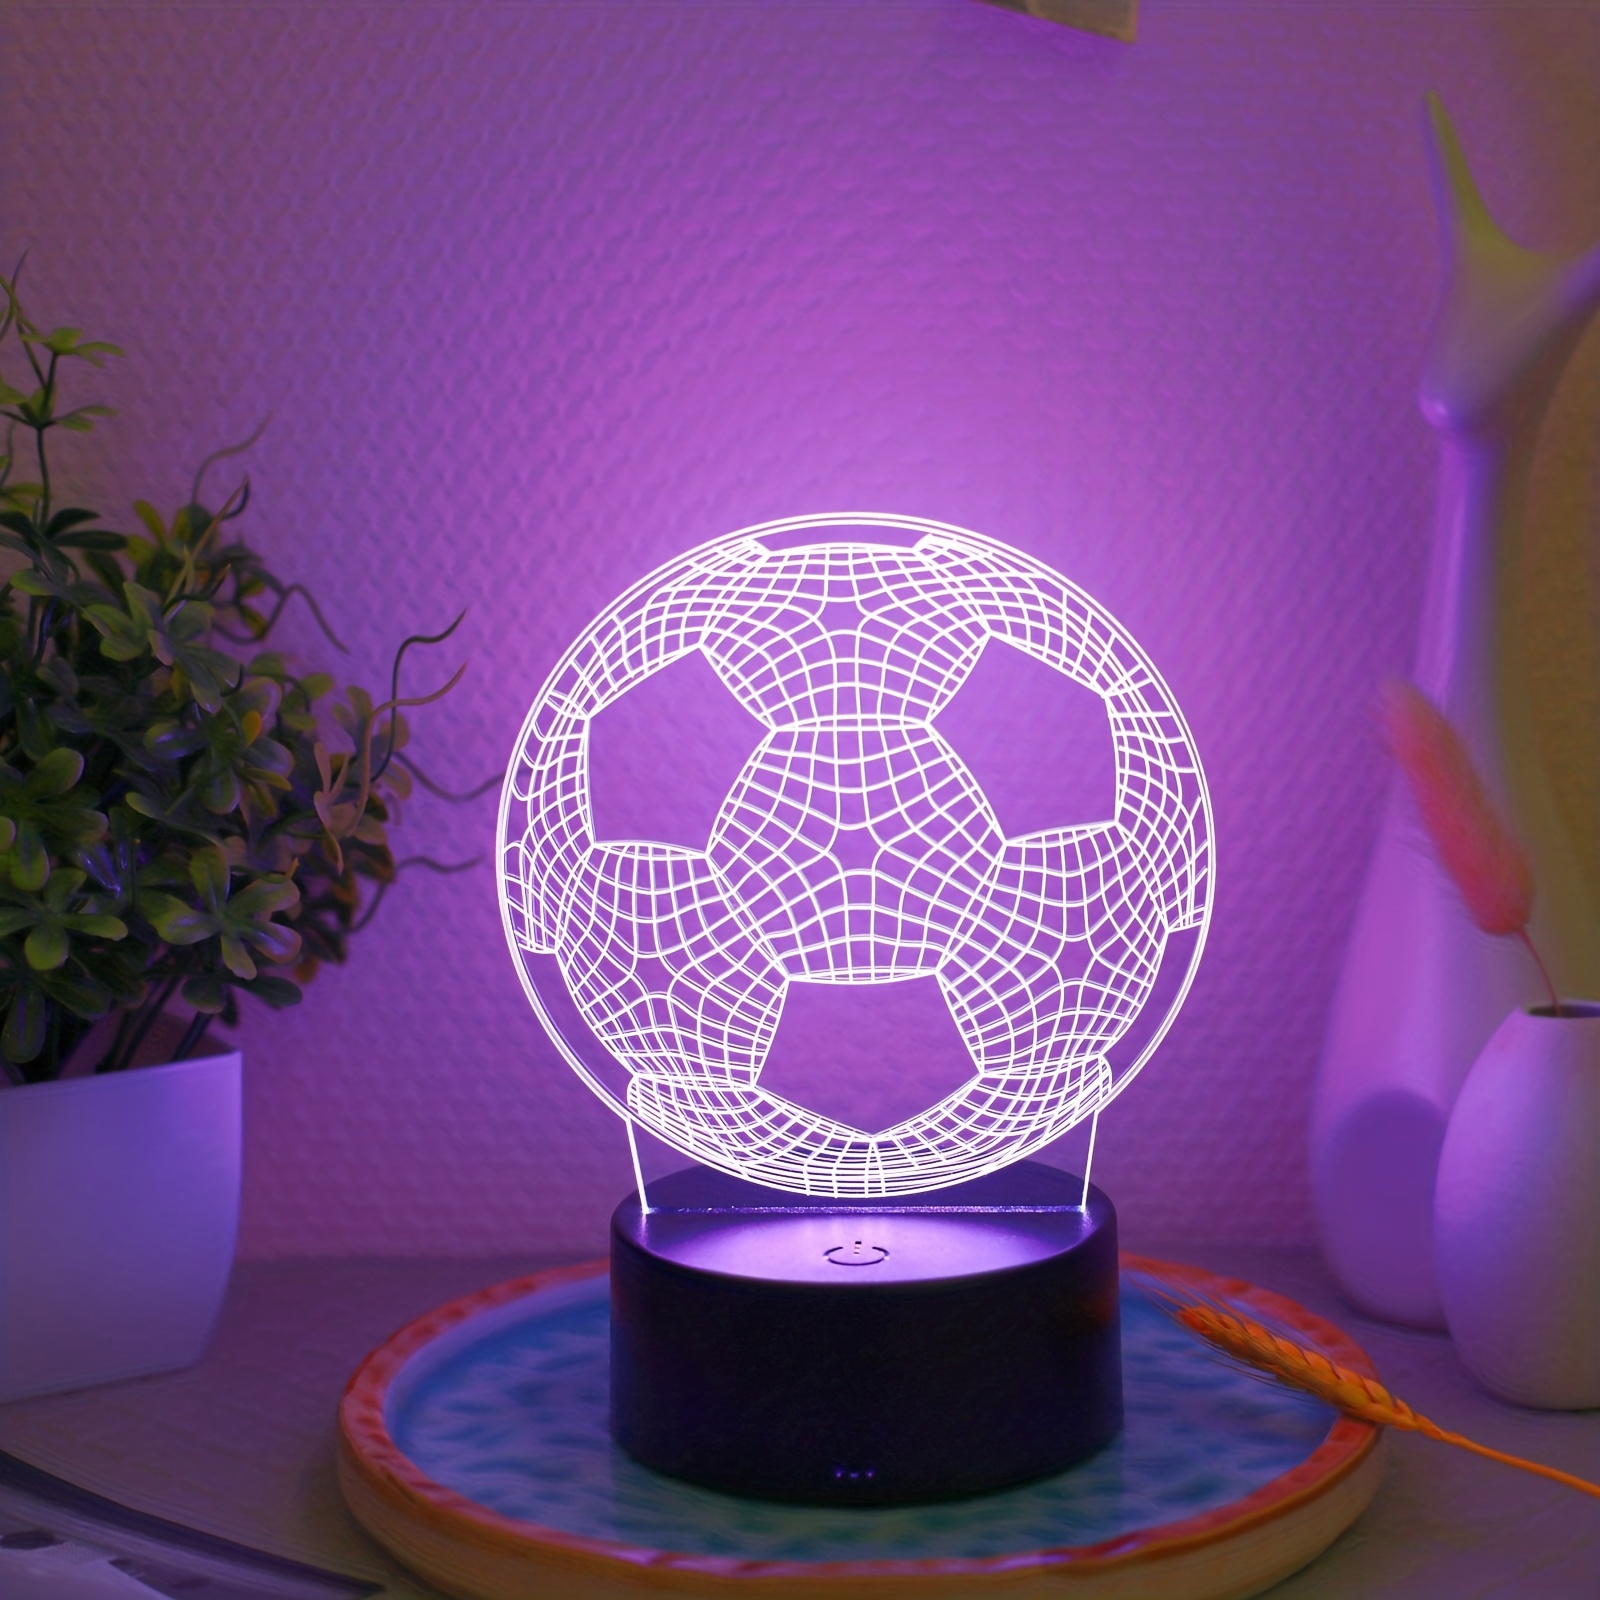 Lampe LED 3D Ballon de Foot – Le Génie de la Lampe 3D